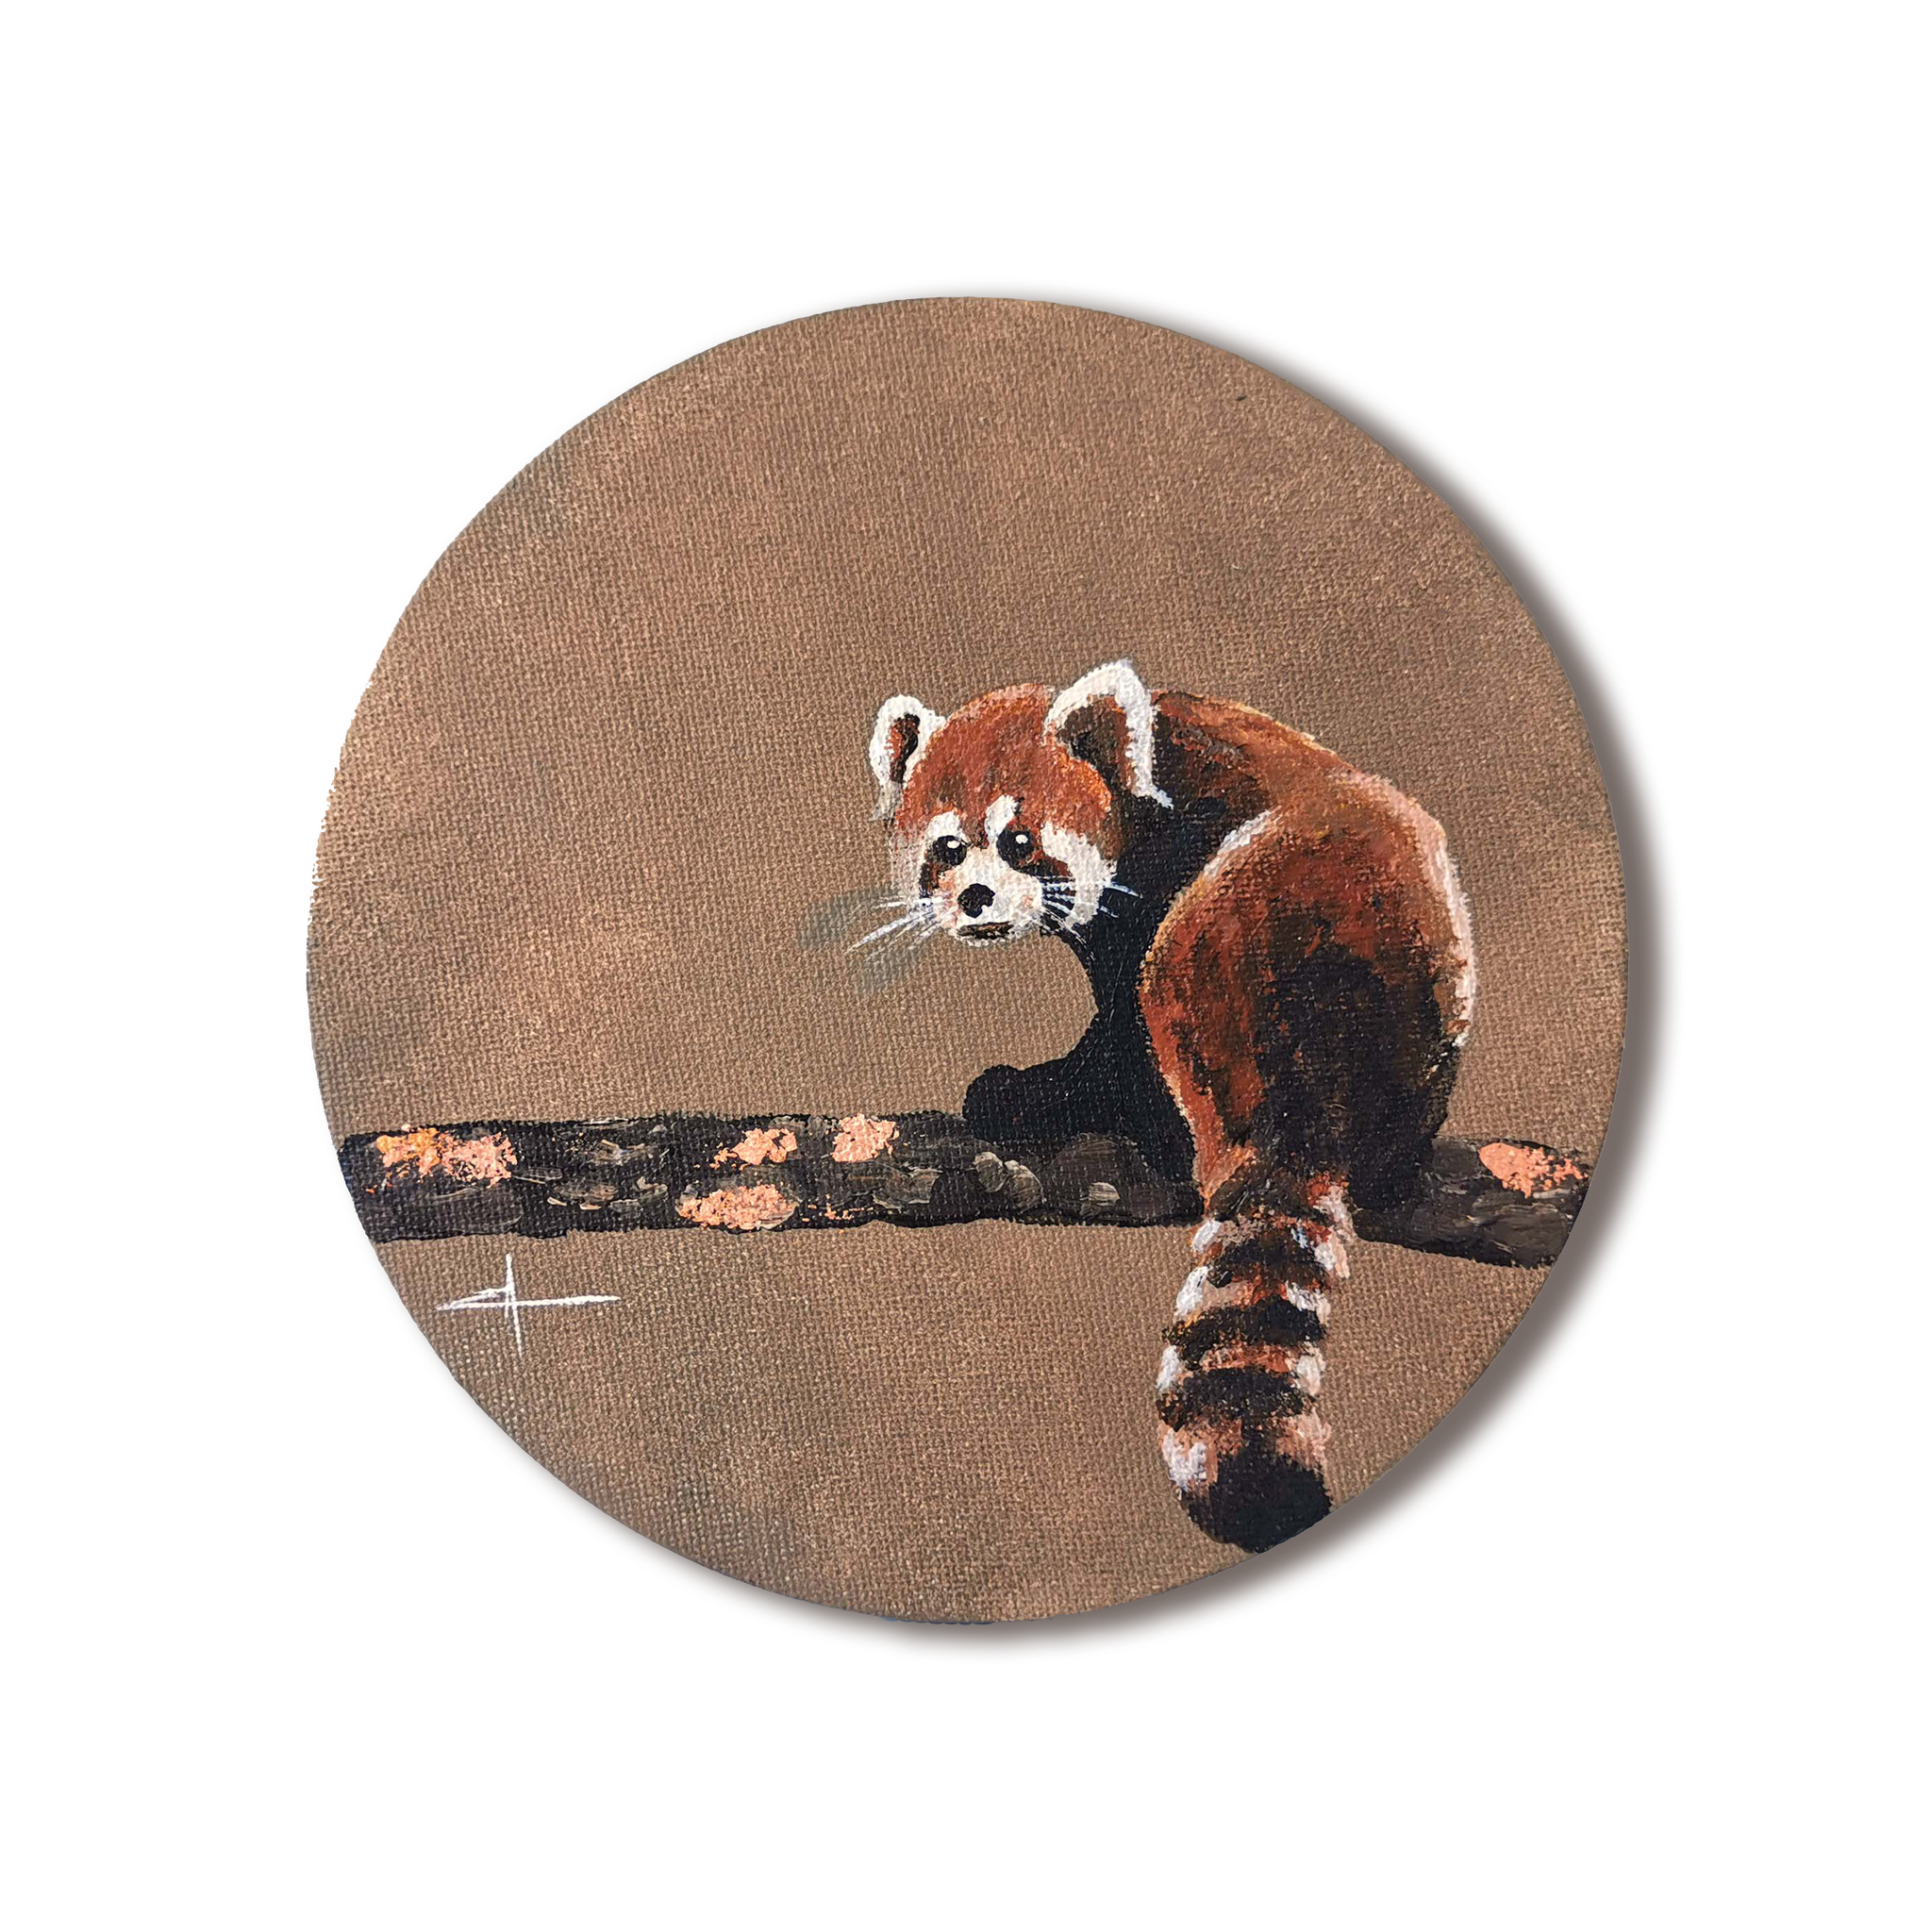 Panda-roux méfiant - 18cm - 140 €